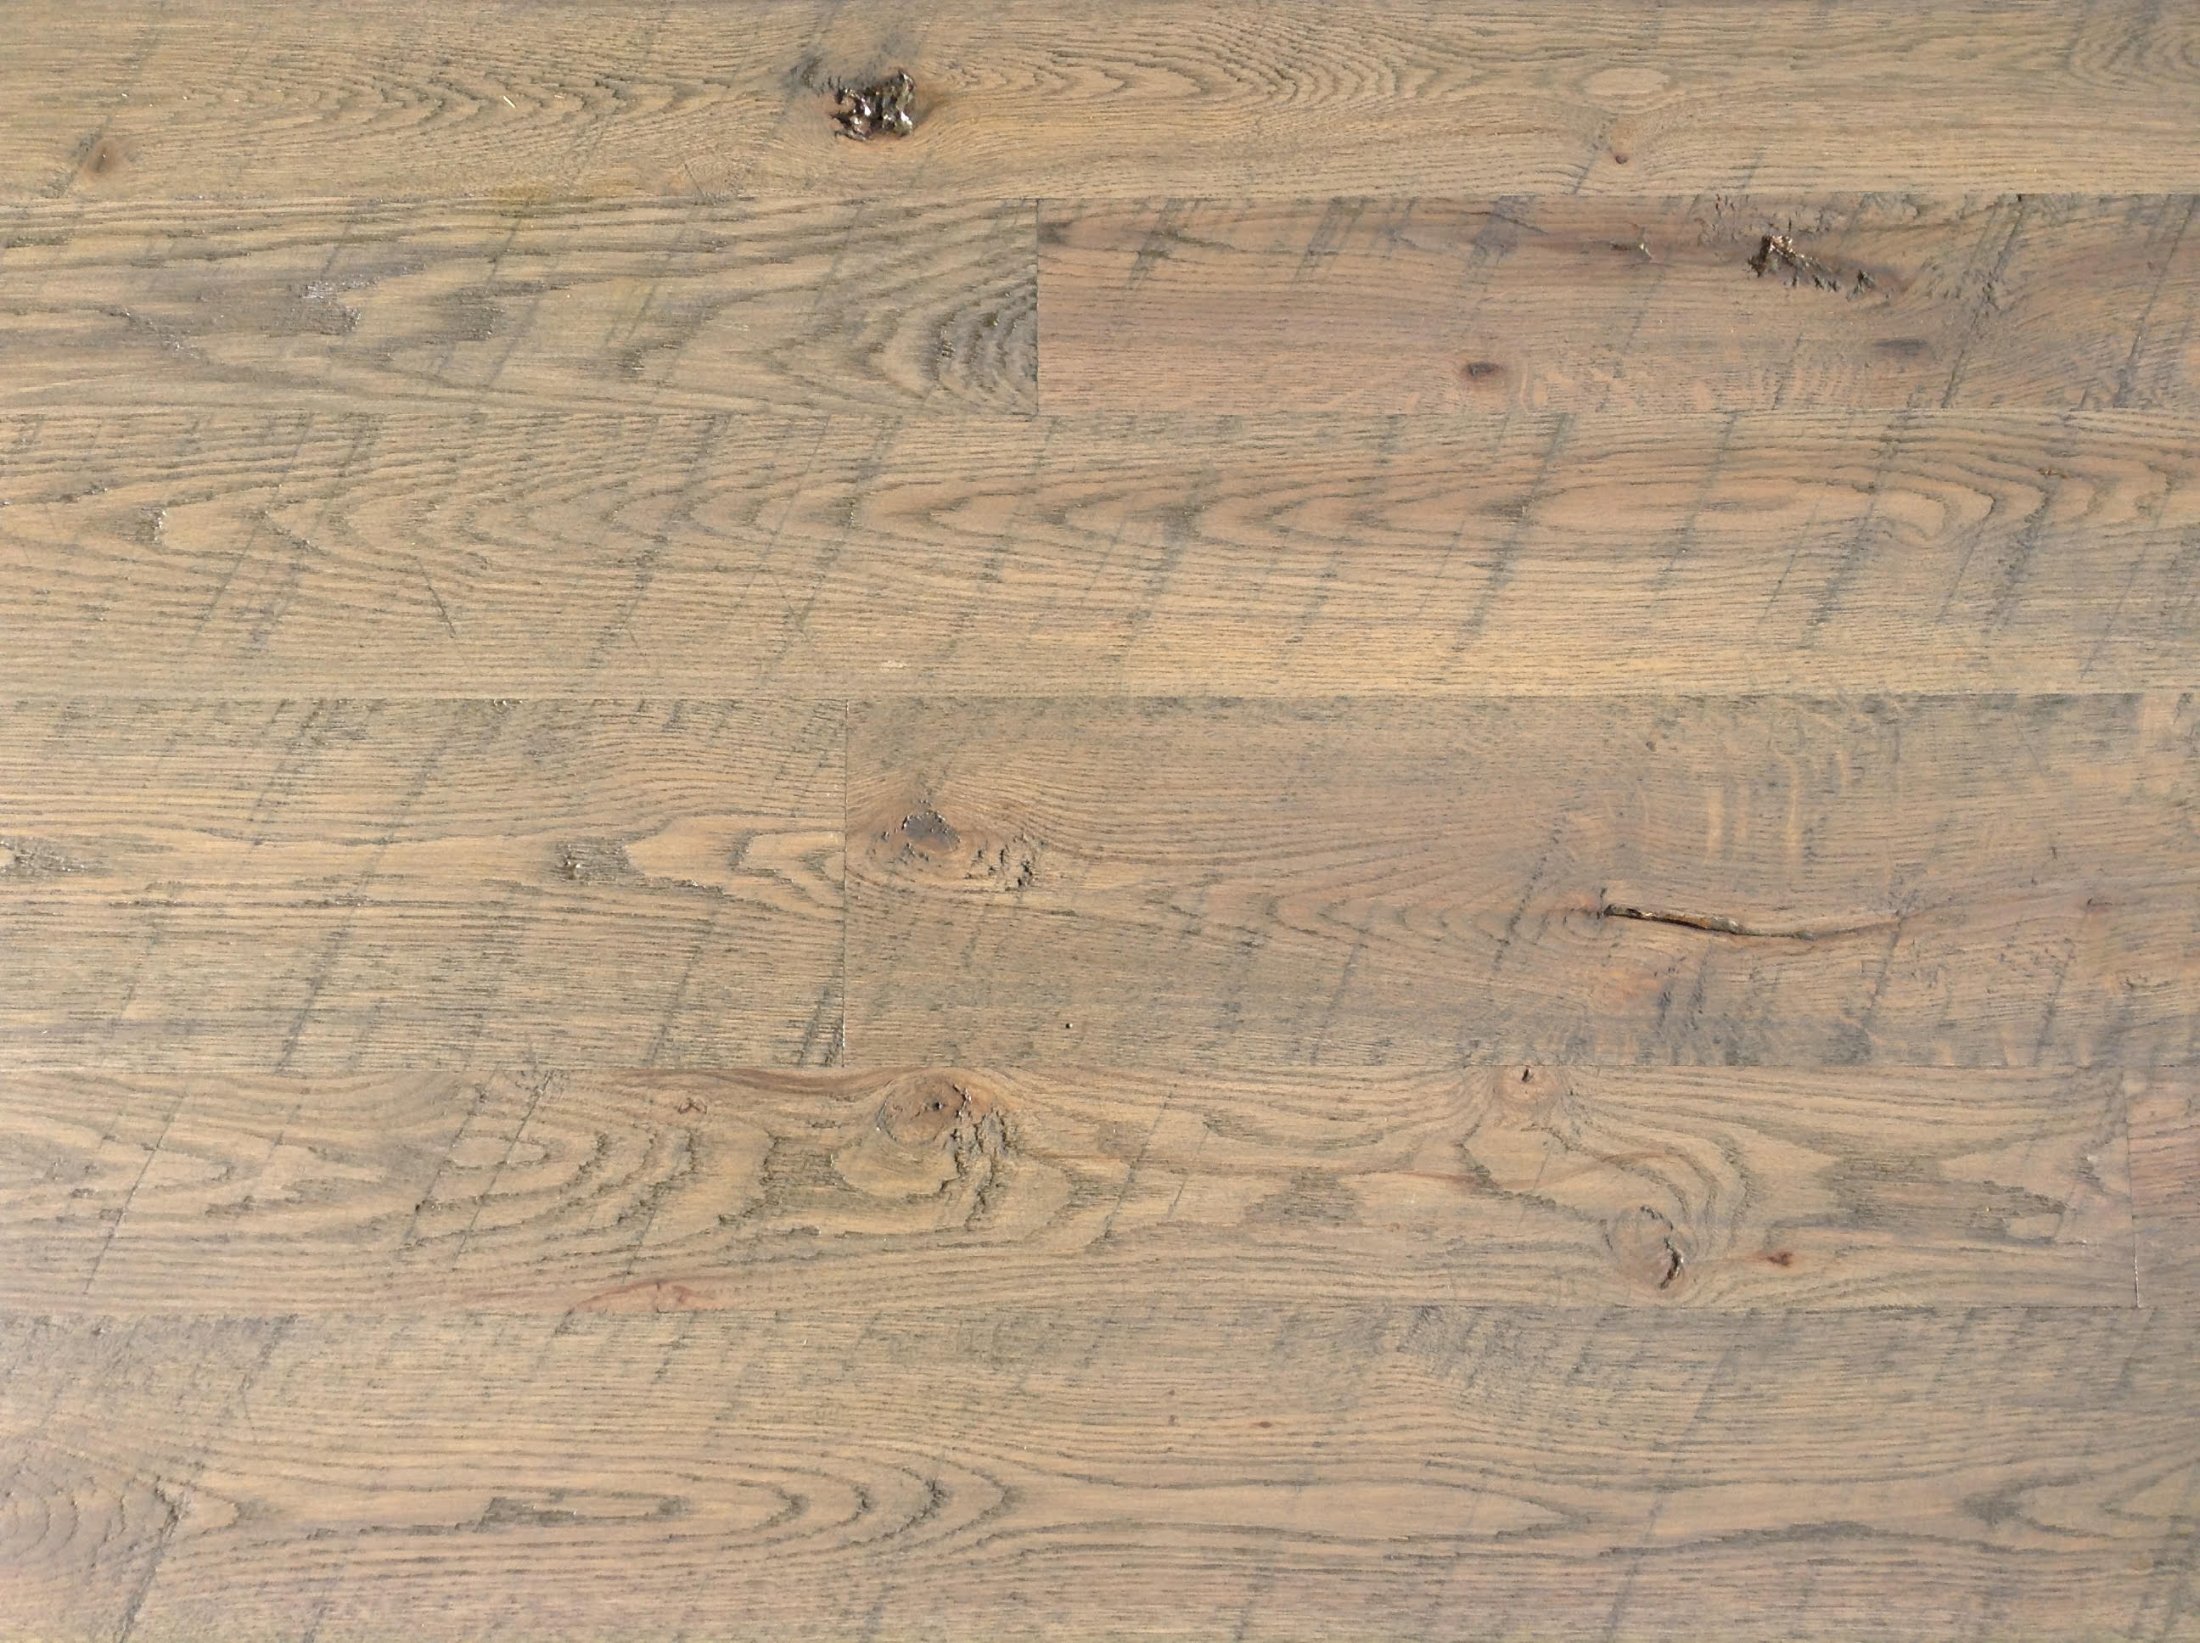 Rough Sawn Flooring Maina Hardwoods, Rough Hewn Laminate Flooring